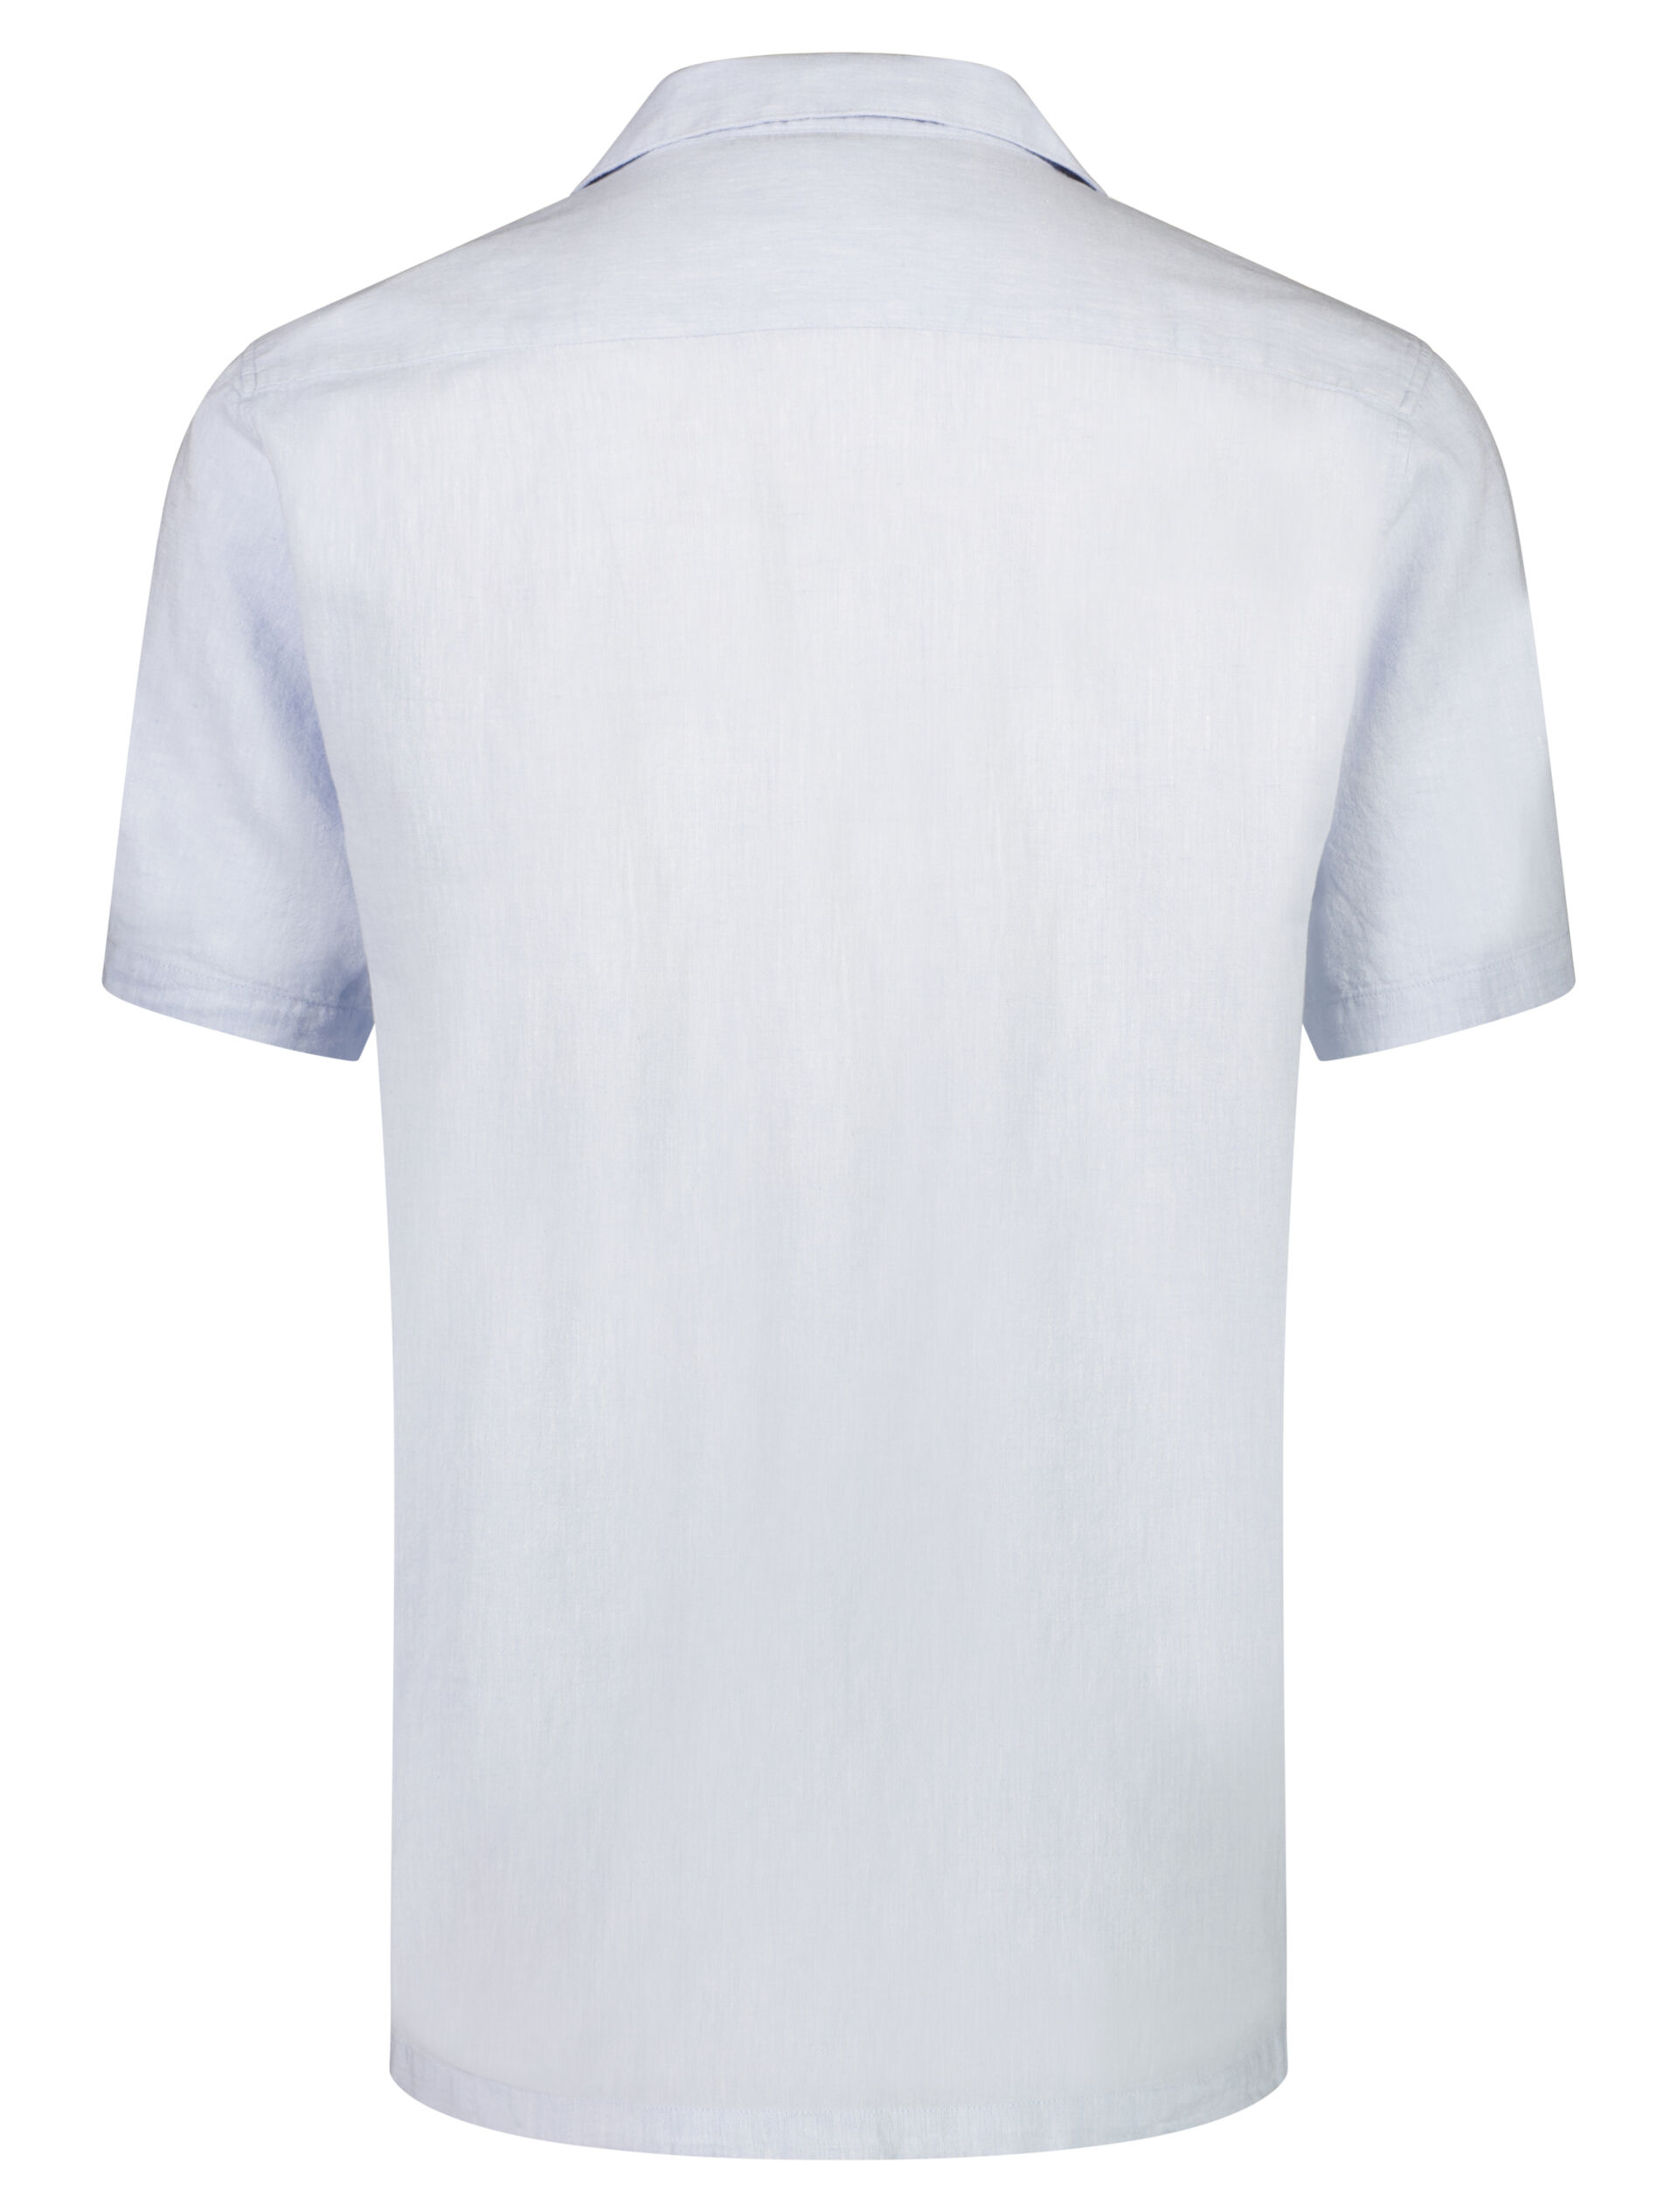 Linen shirt 30-203319